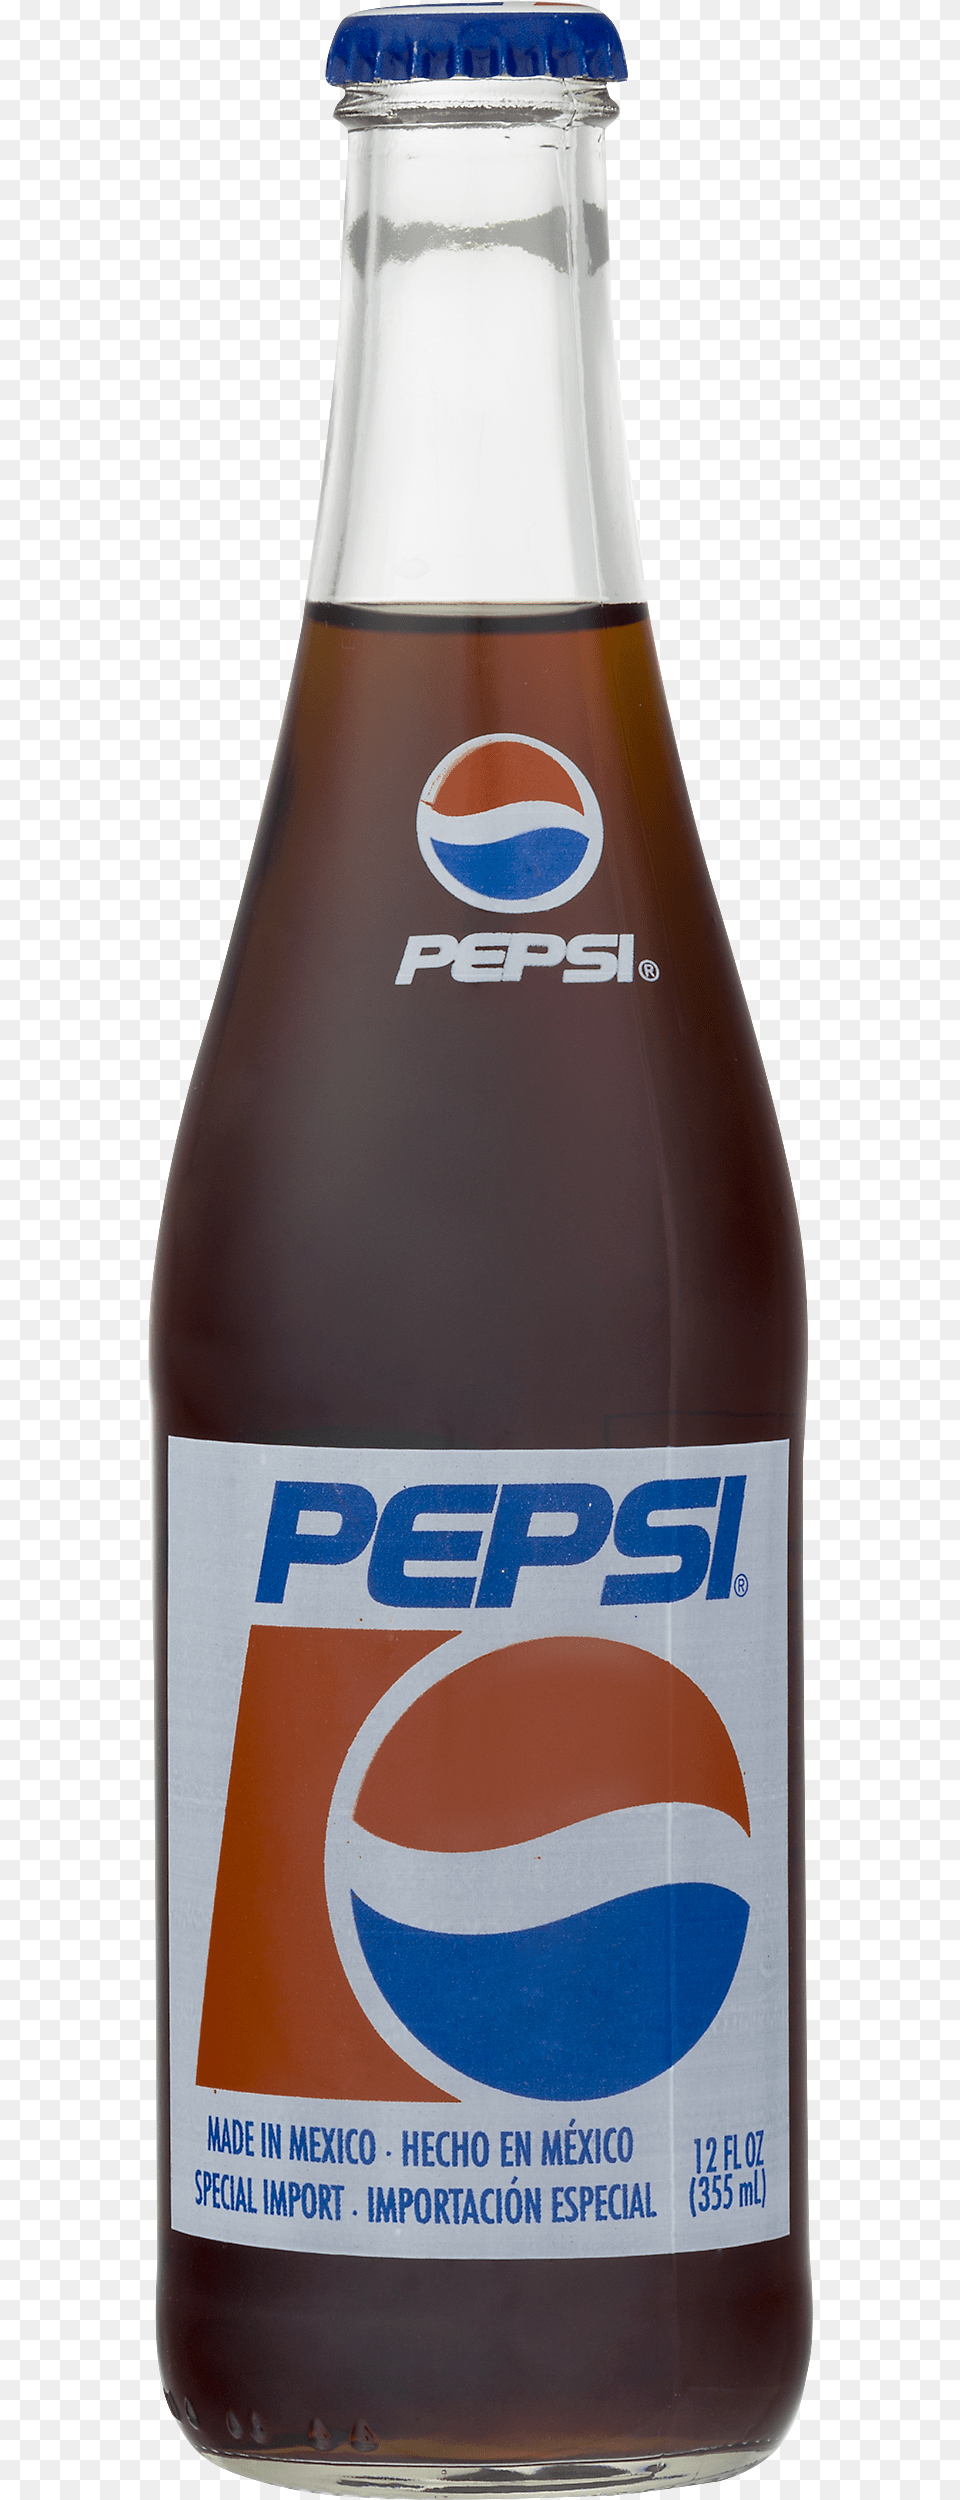 Pepsi Mexican Soda 12 Fl Oz Bottle, Alcohol, Beer, Beverage, Pop Bottle Free Transparent Png